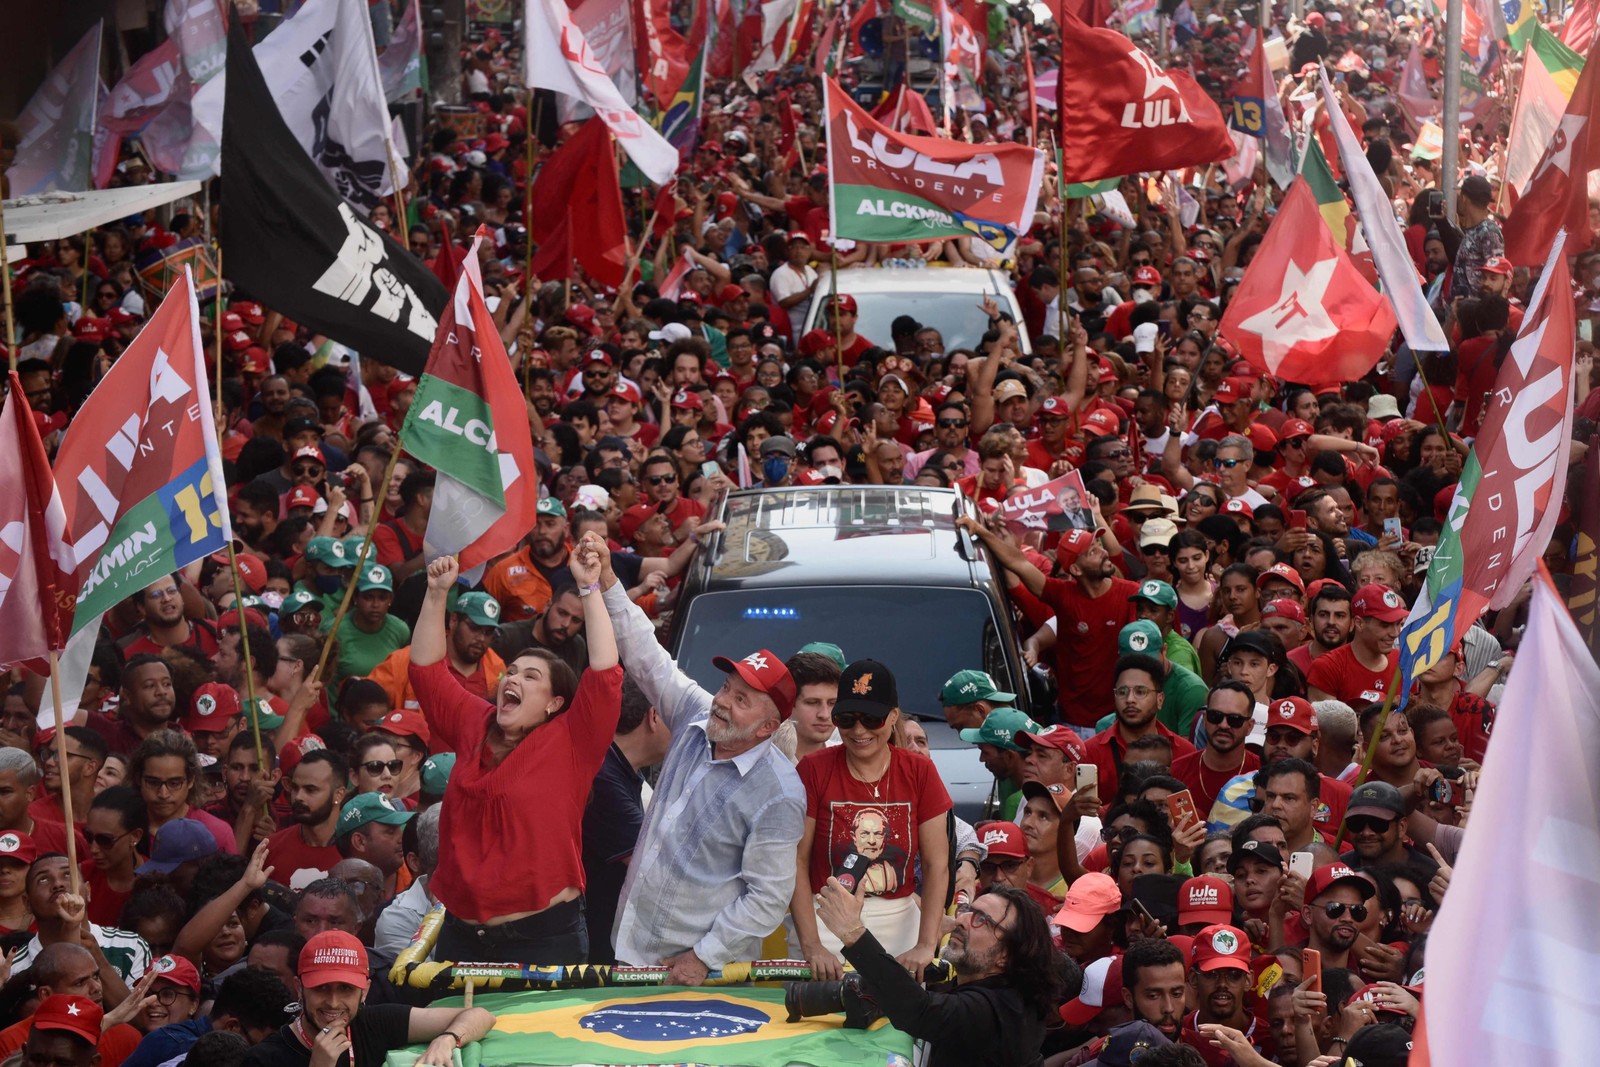 Lula e a candidata a governadora de Pernambuco Marilia Arraes durante campanha em Recife. — Foto: Maira Erlich / AFP